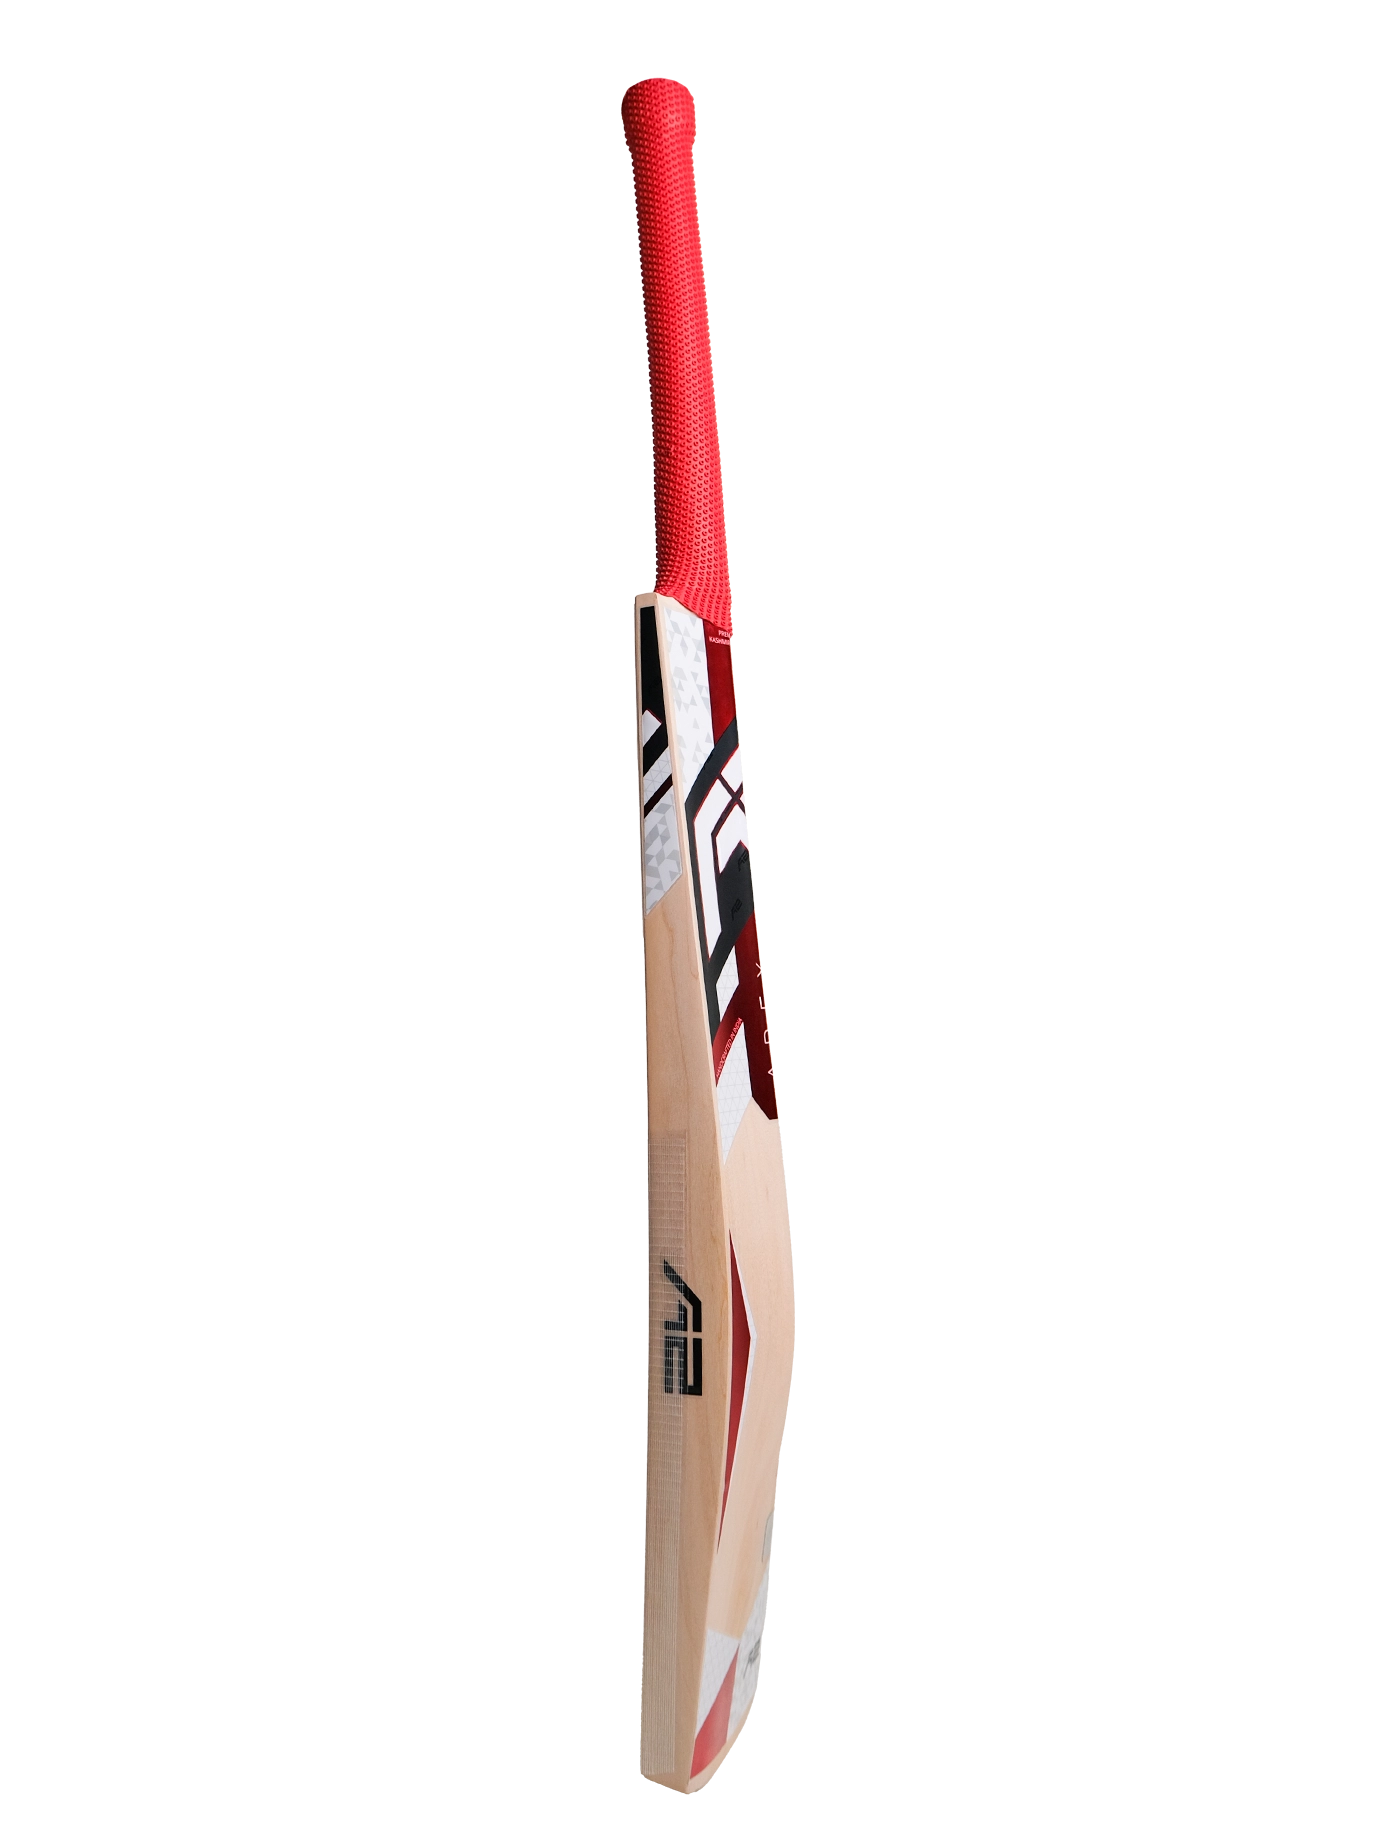 A2 Cricket Grade 1 Kashmir Willow Cricket Bat Apex Side View